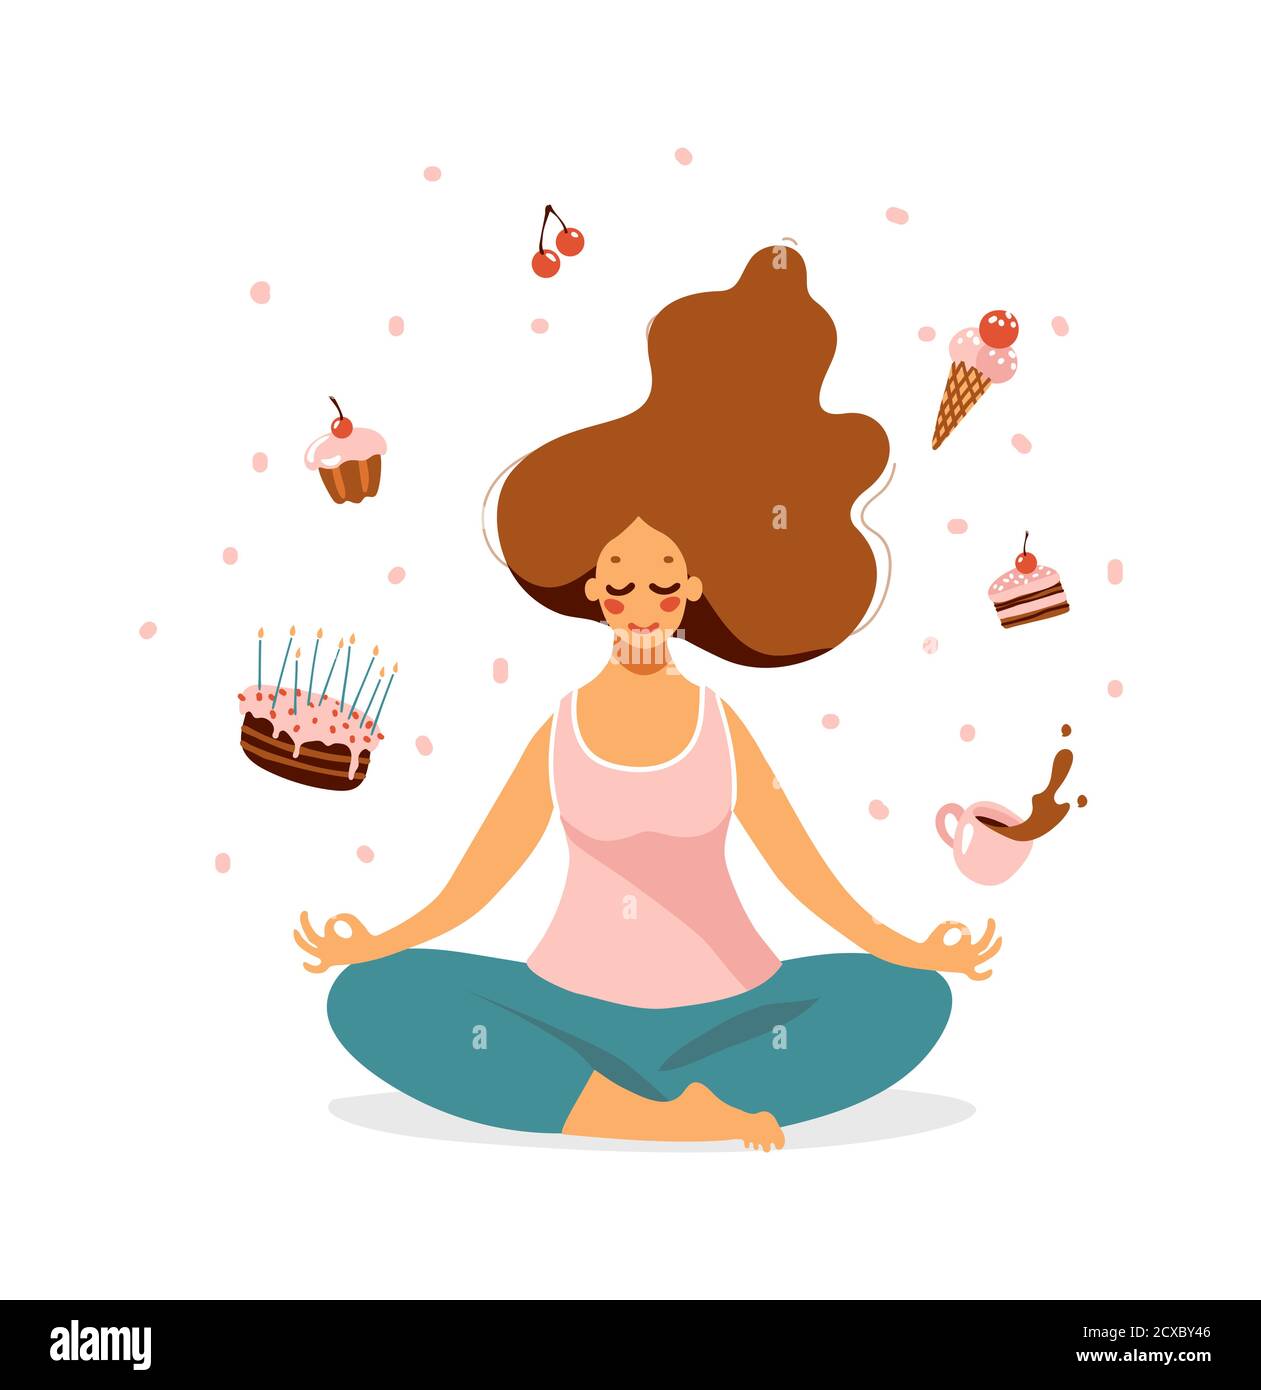 Una ragazza carina si siede in una posizione di loto e sogni di dolci. Una donna è impegnata nello yoga, volare torte, gelato e torta volare intorno. Simpatico personaggio di cartone animato femminile. Immagine vettoriale piatta isolata su sfondo bianco Illustrazione Vettoriale